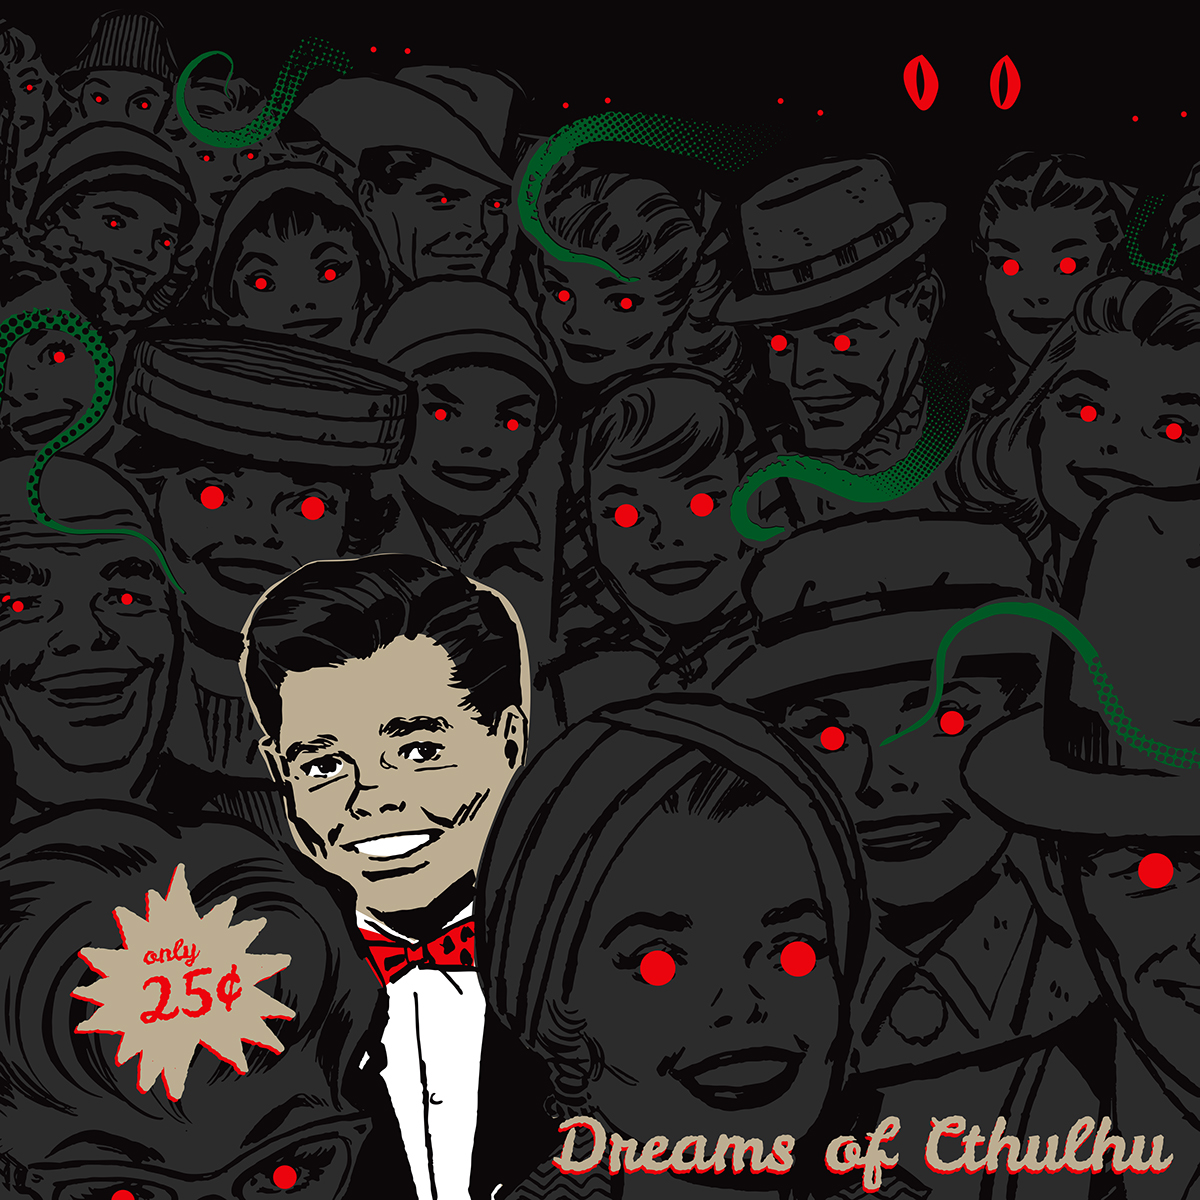 cthulhu hp lovecraft Scifi Sci Fi album art pop culture dark horror Horror Art